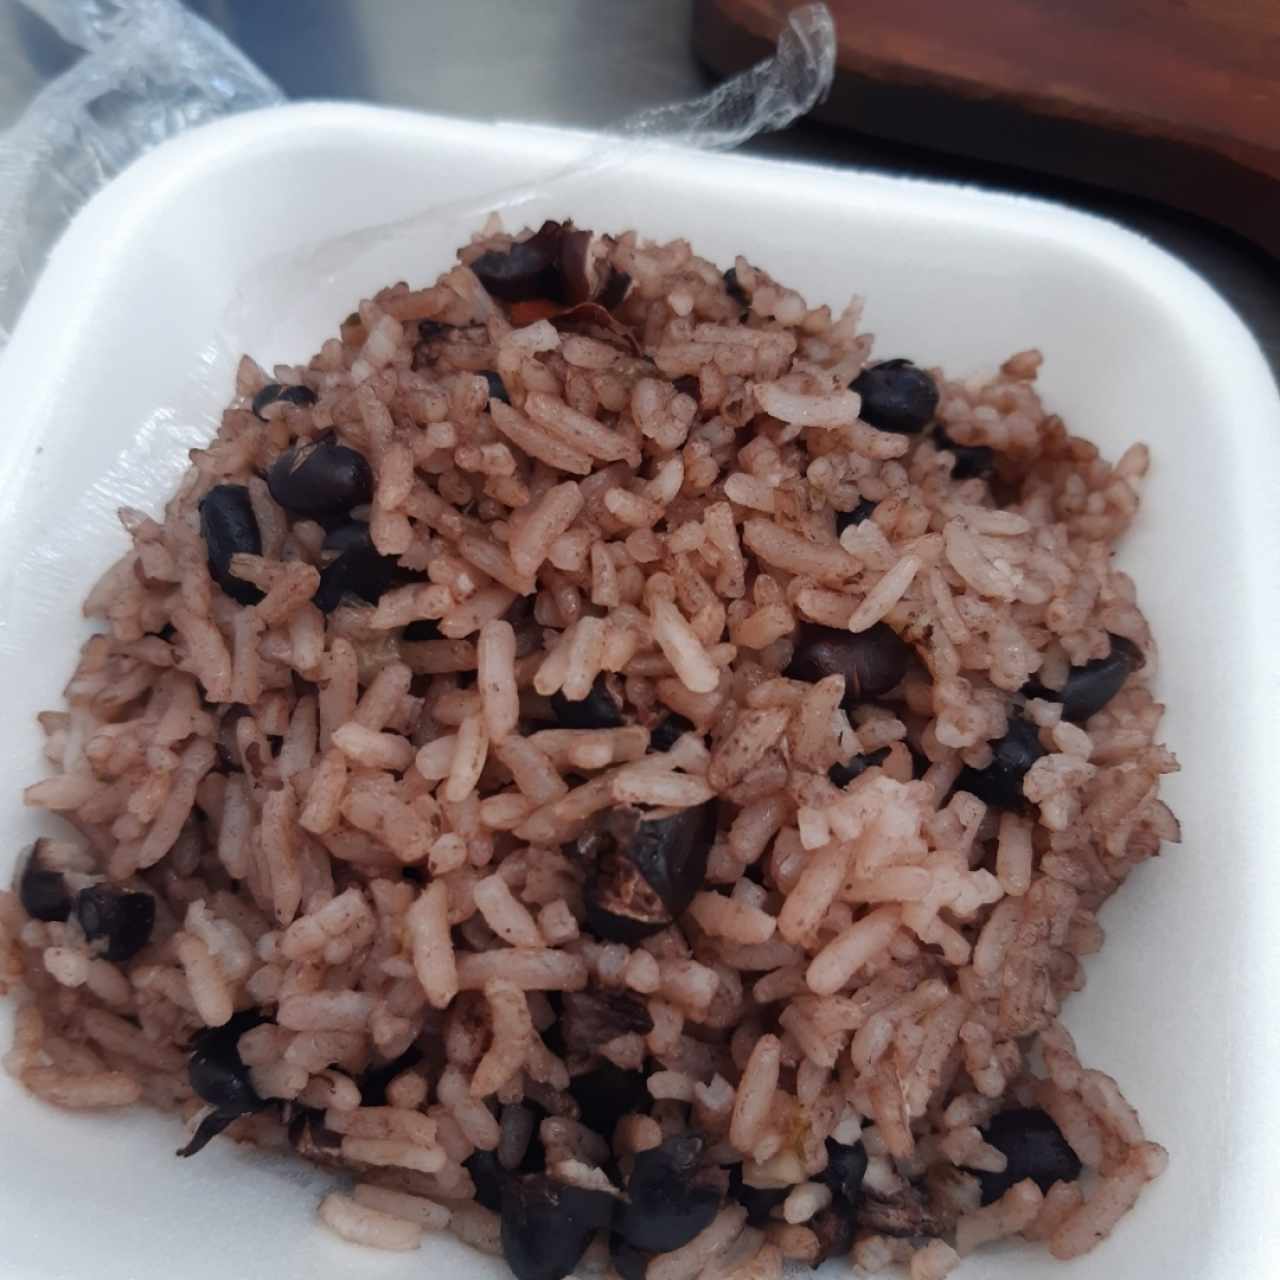 arroz con frijoles